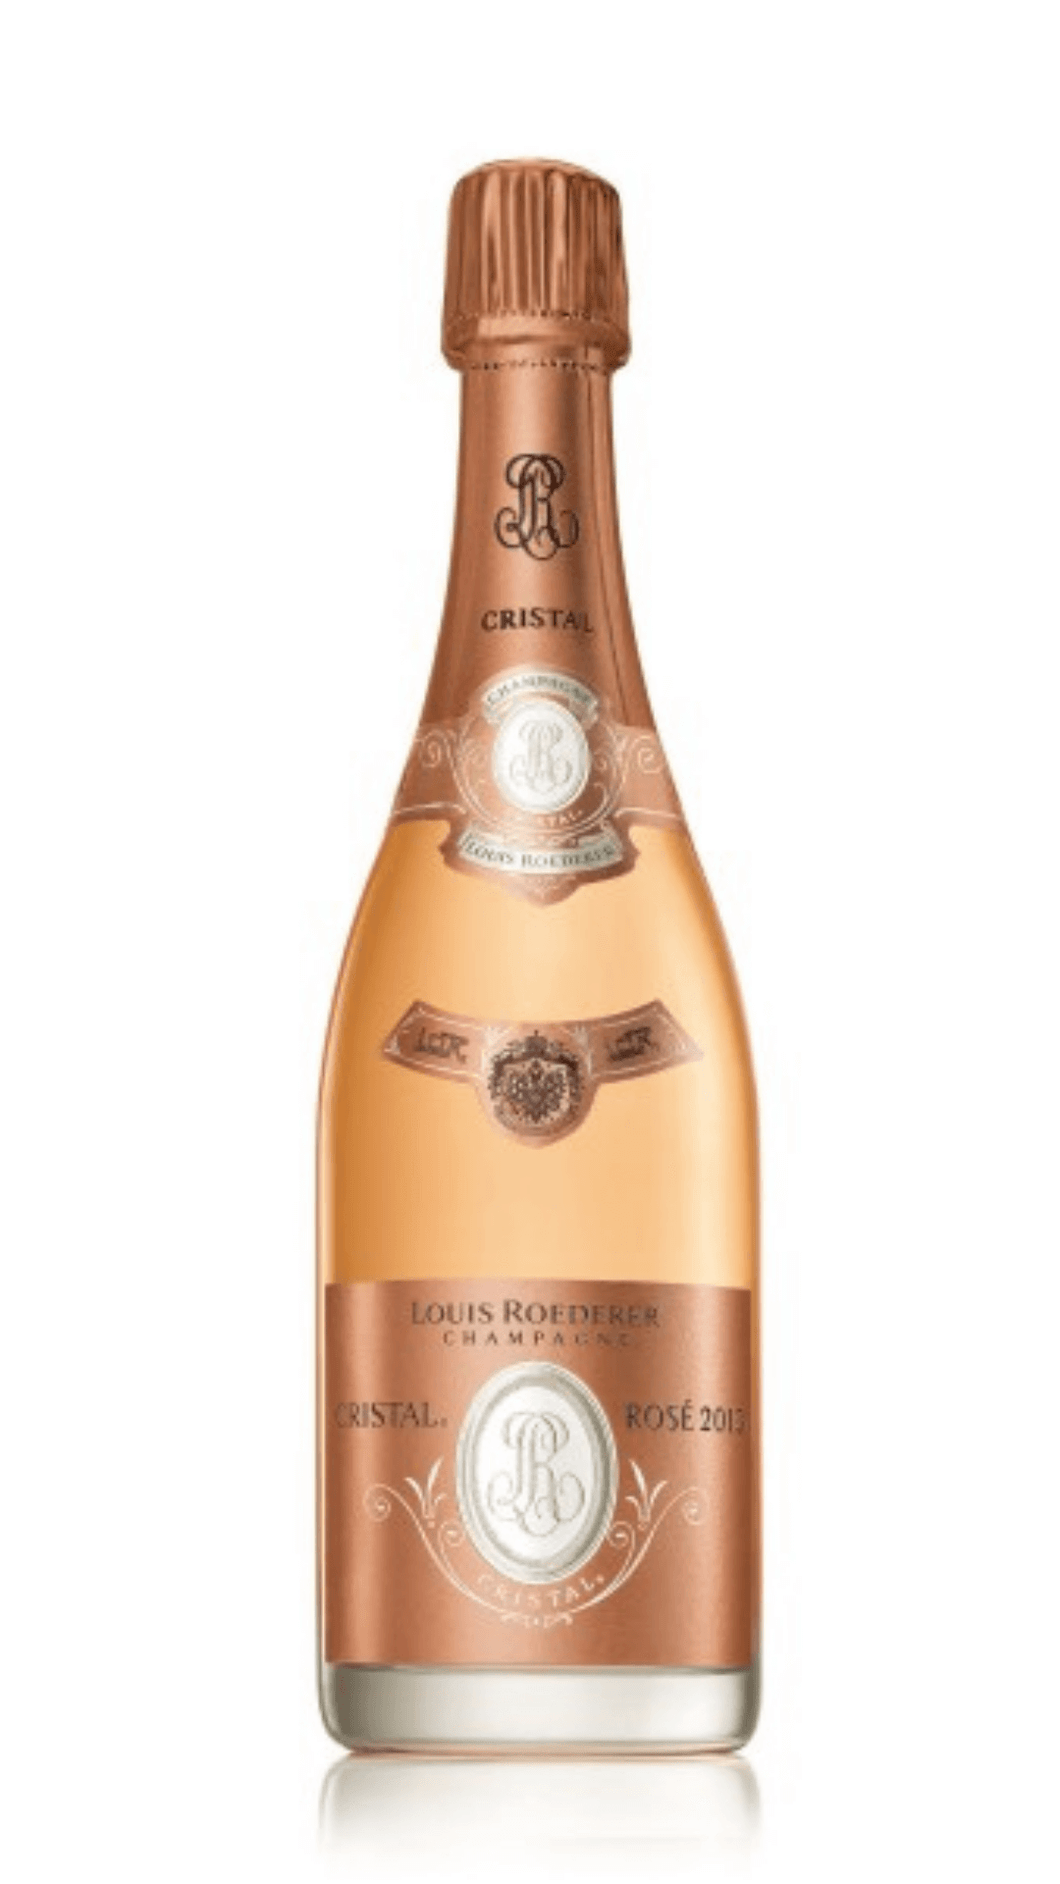 Champagne Cristal Rosé 2013 Louis Roederer